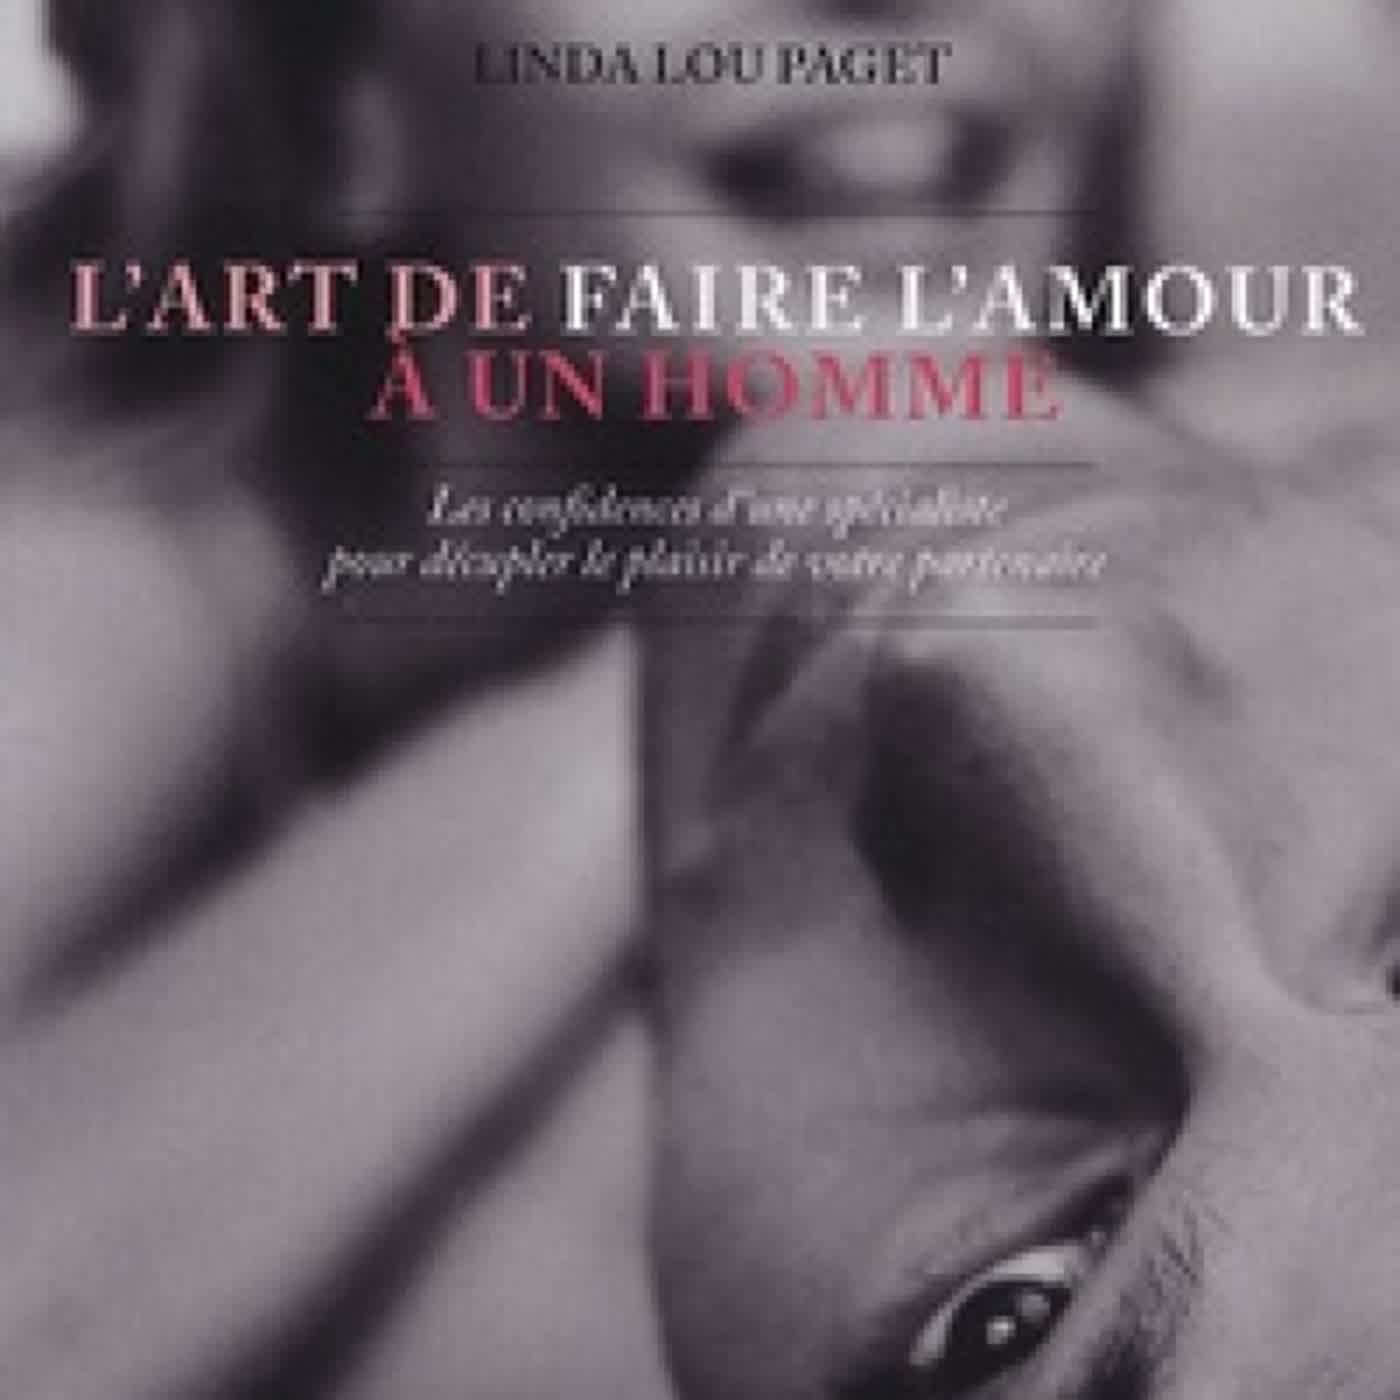 [Pdf/ePub] L'art de faire l'amour à un homme by Linda Lou Paget download ebook